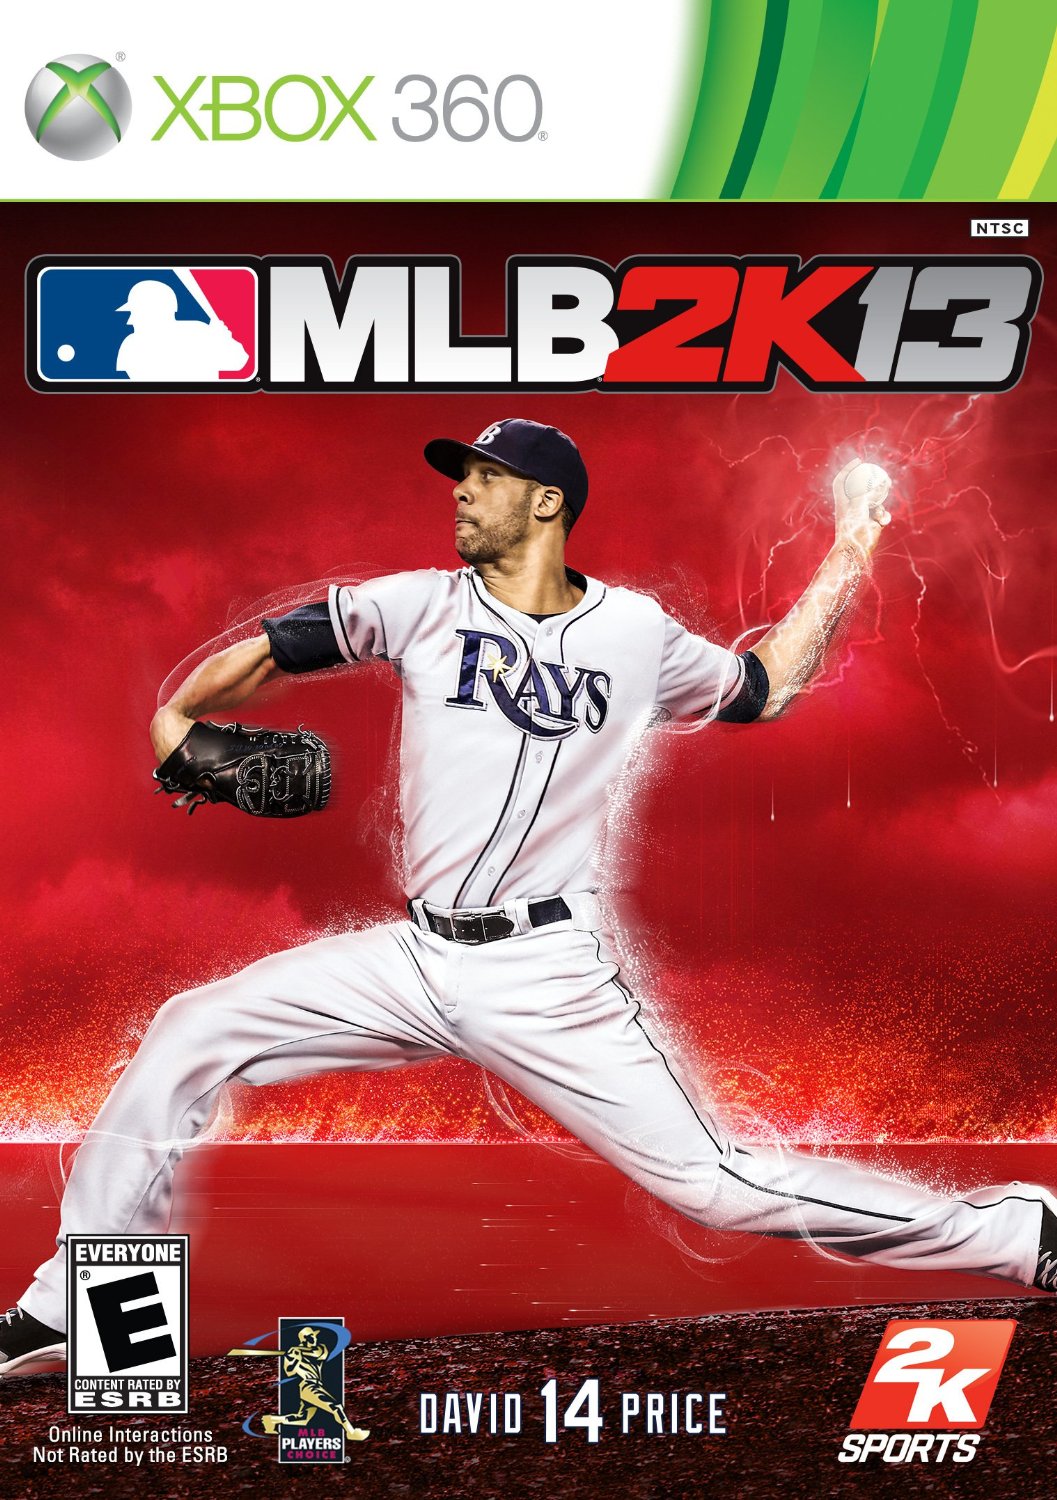 360: MLB 2K13 (COMPLETE)